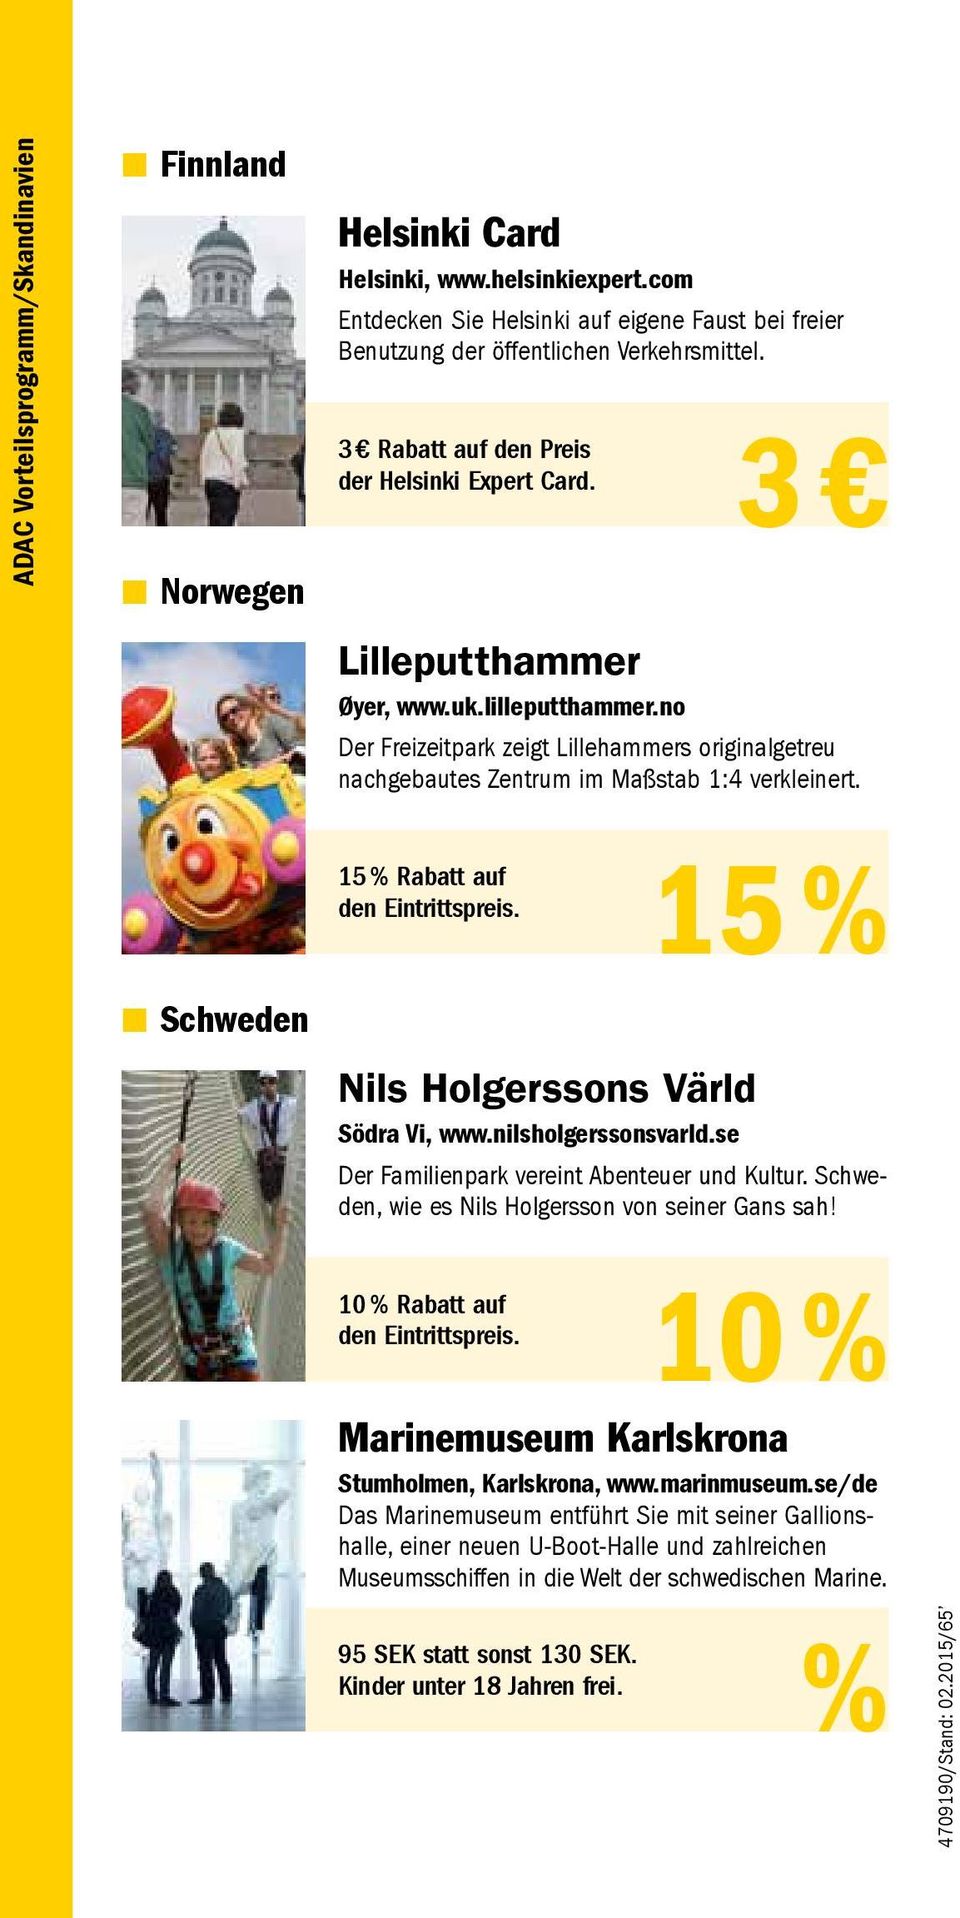 Schweden 15 % Rabatt auf den Eintrittspreis. Nils Holgerssons Värld Södra Vi, www.nilsholgerssonsvarld.se 15 % Der Familienpark vereint Abenteuer und Kultur.